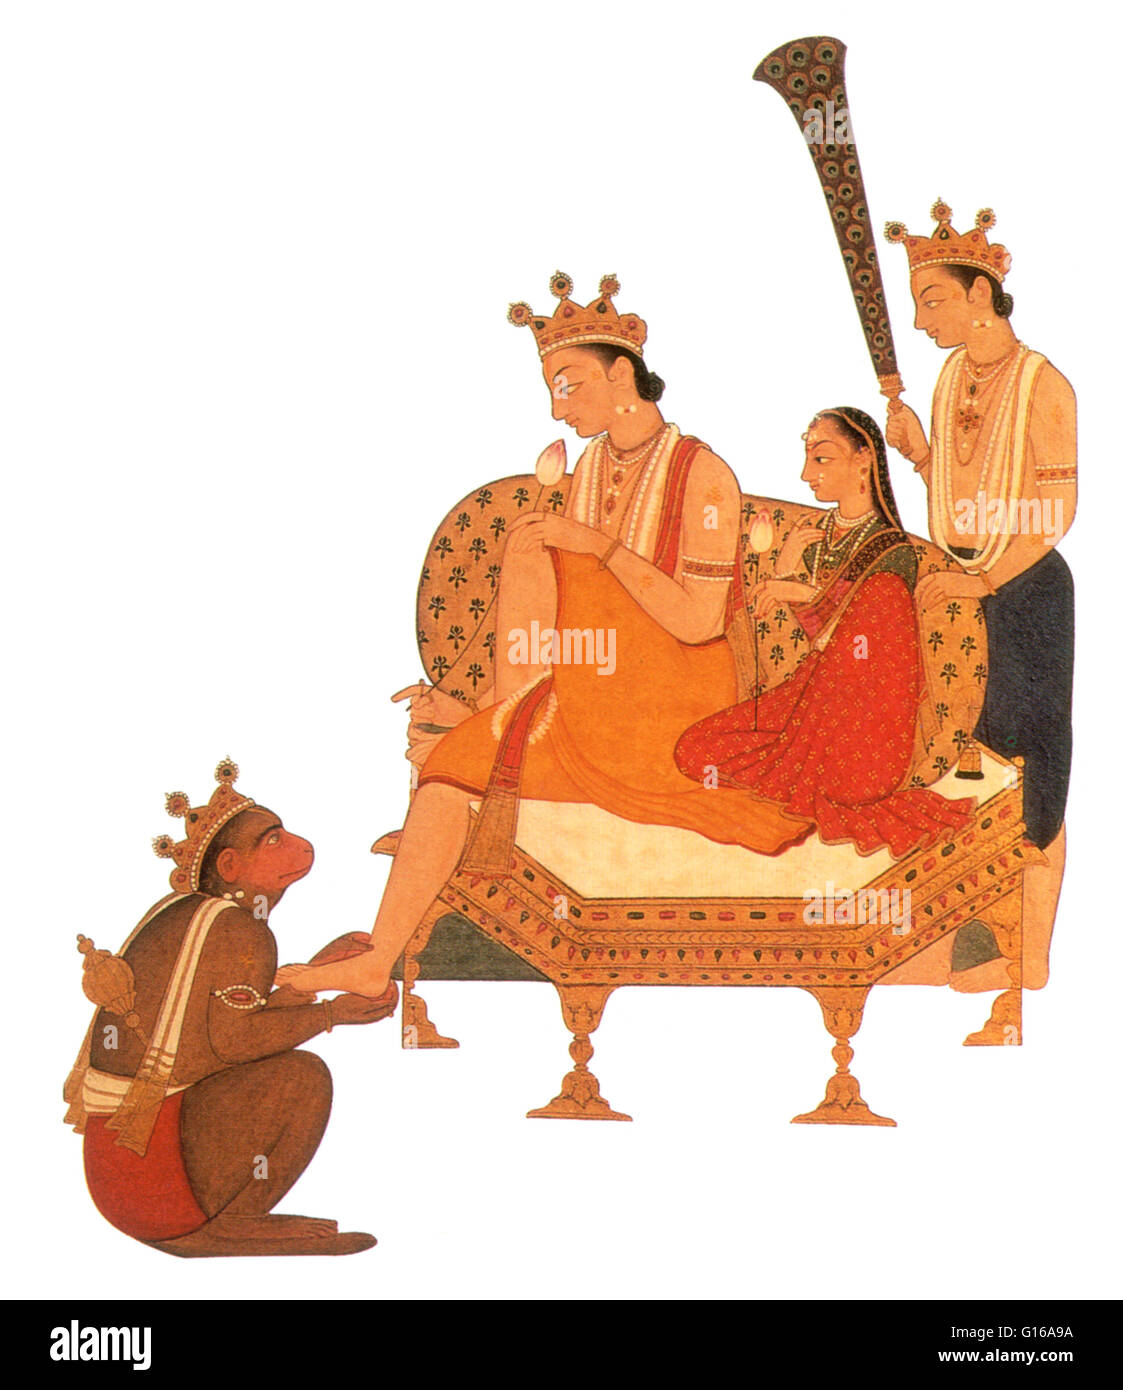 Hanuman, Rama, der mit seiner Frau, Sita und ihr Bruder Lakshman sitzt zu verehren. In hinduistischen Mythos, der siebte Avatara von Vishnu. Rama ist der Held des indischen Epos Ramayana. Geboren als Prinz von Ayodhya, stellt er viele Drangsale, unter denen ist bei Stockfoto